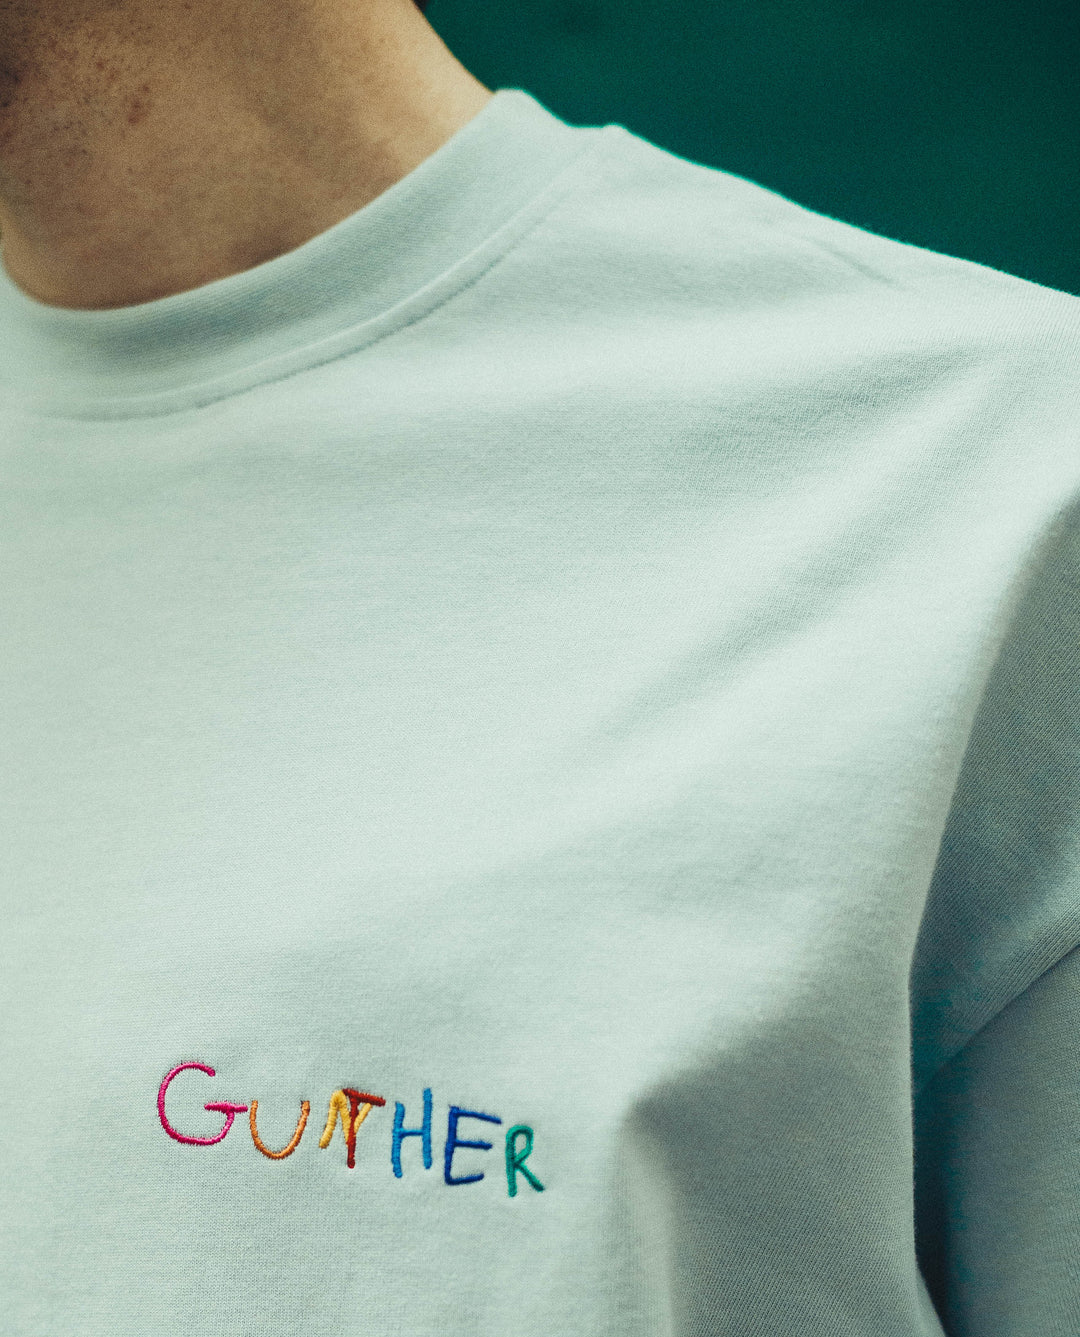 Gunther t-shirt